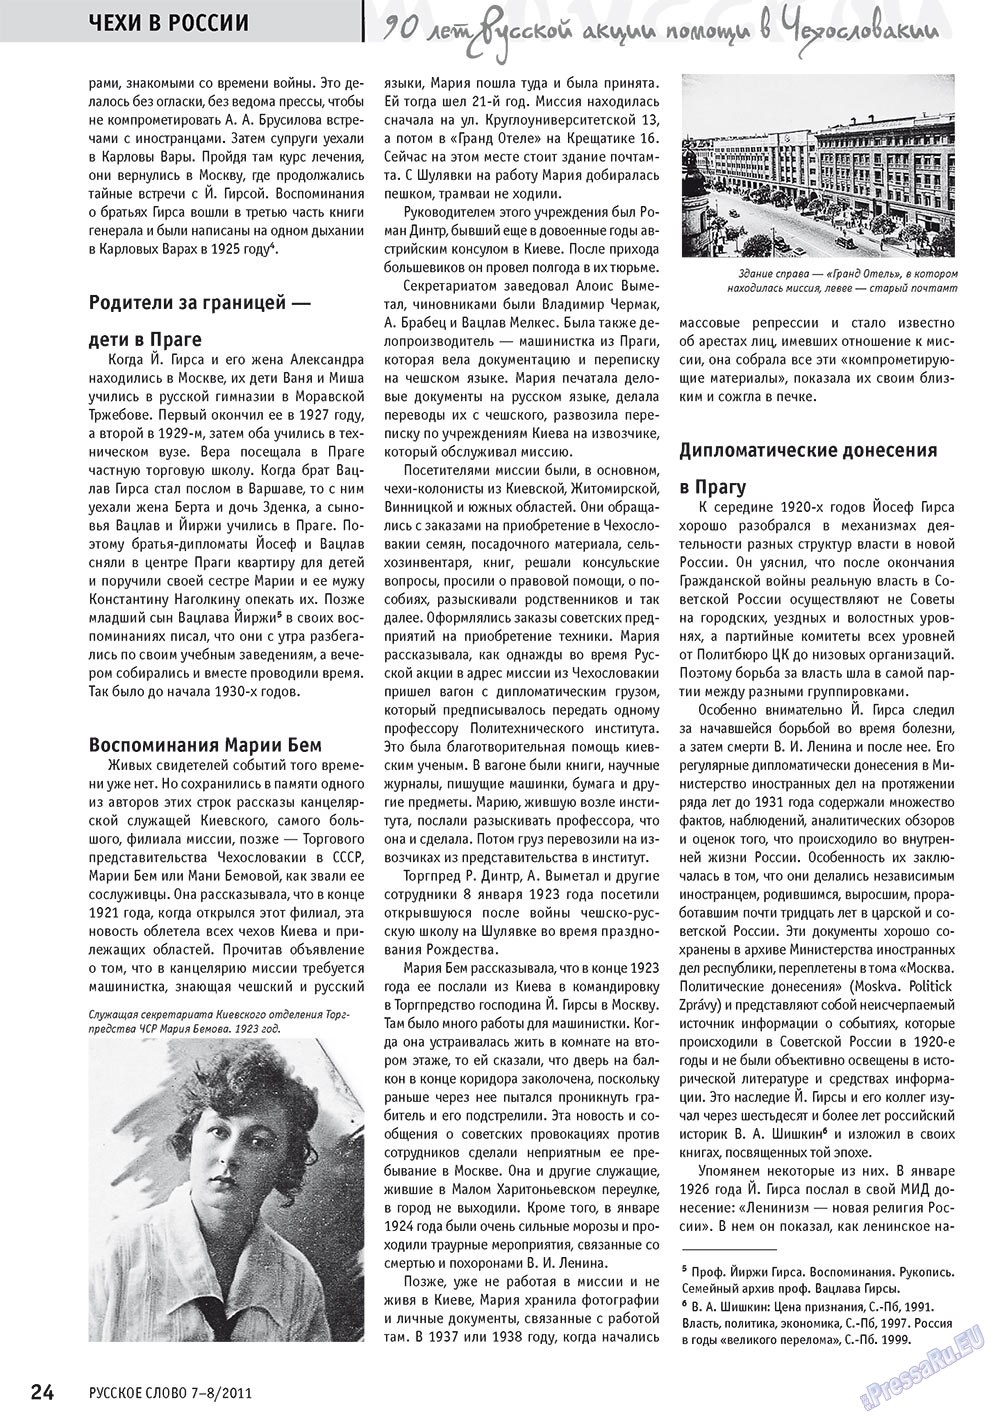 Русское слово, журнал. 2011 №7 стр.26